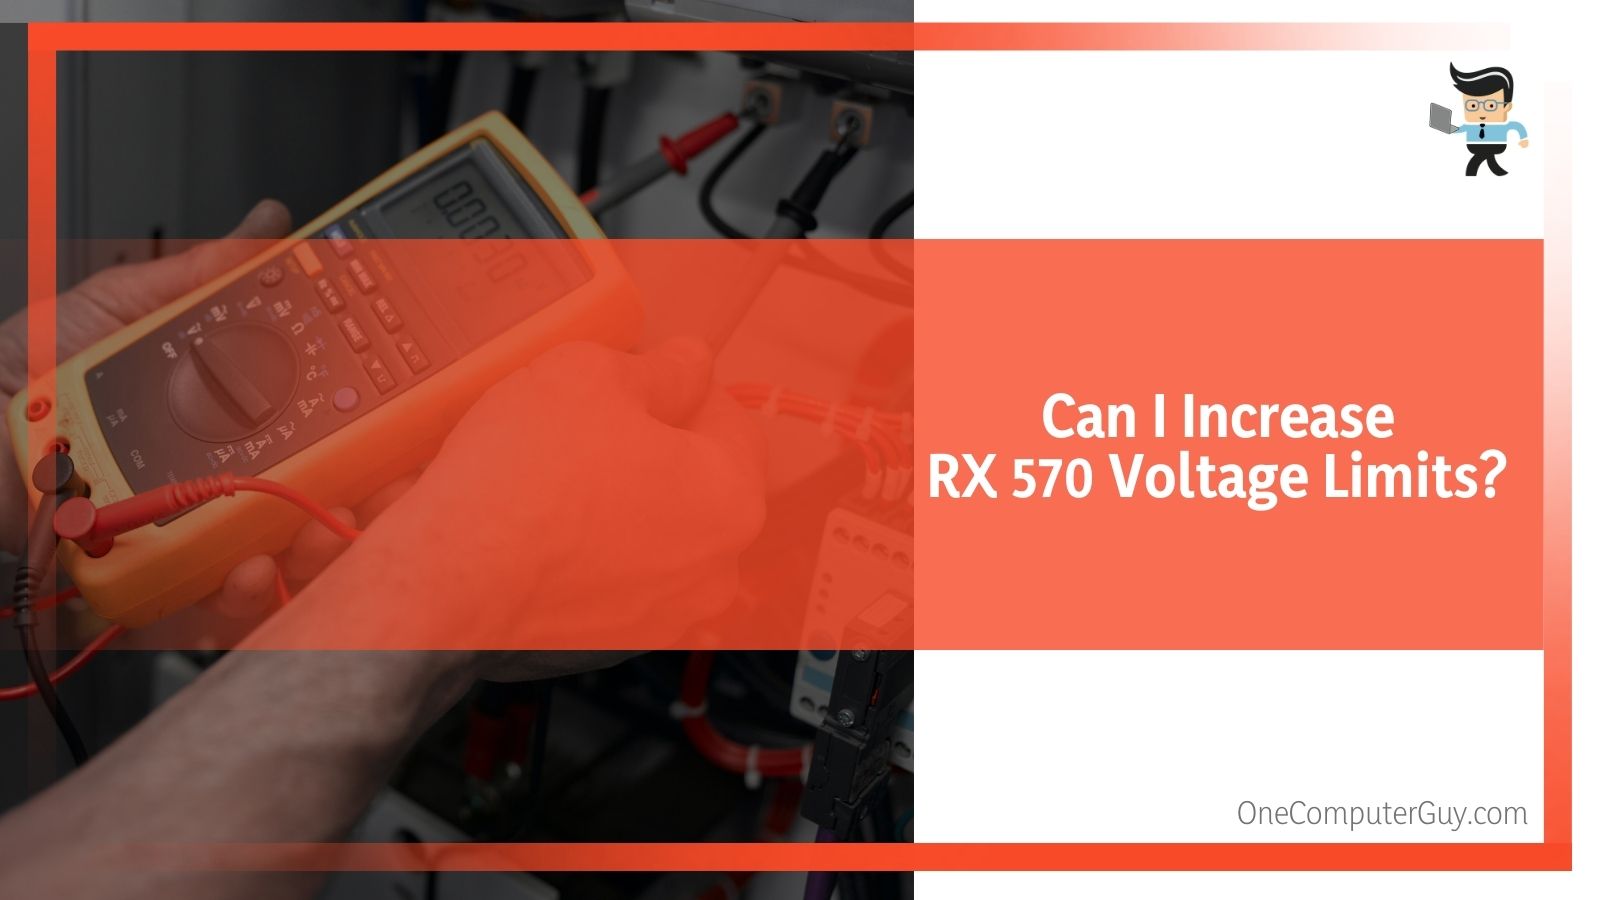 Increasing RX 570 Voltage Limits